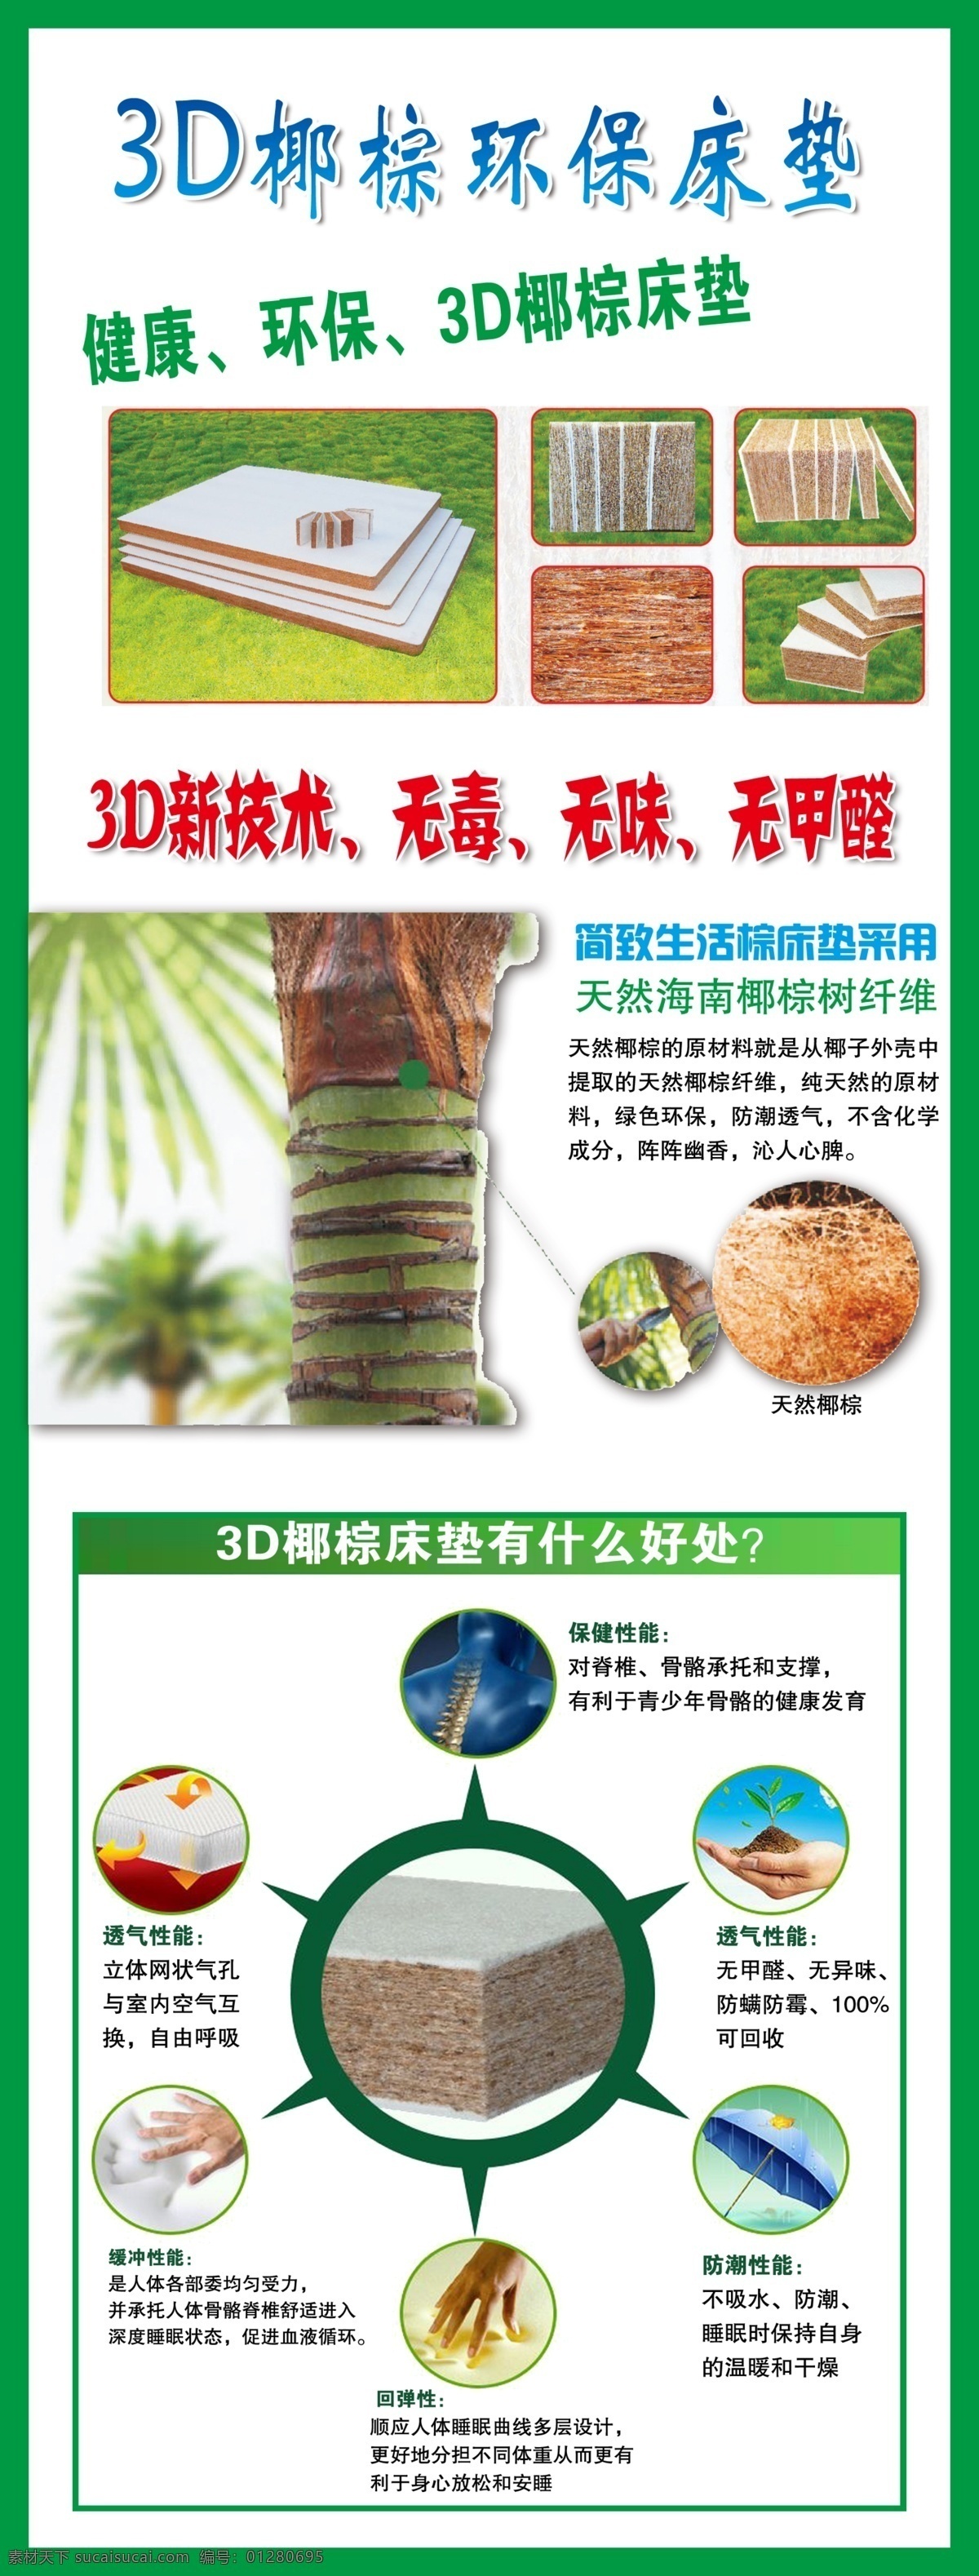 3d 椰 棕 环保 床垫 环保椰棕床垫 椰棕床垫 椰棕 床垫广告 广告宣传